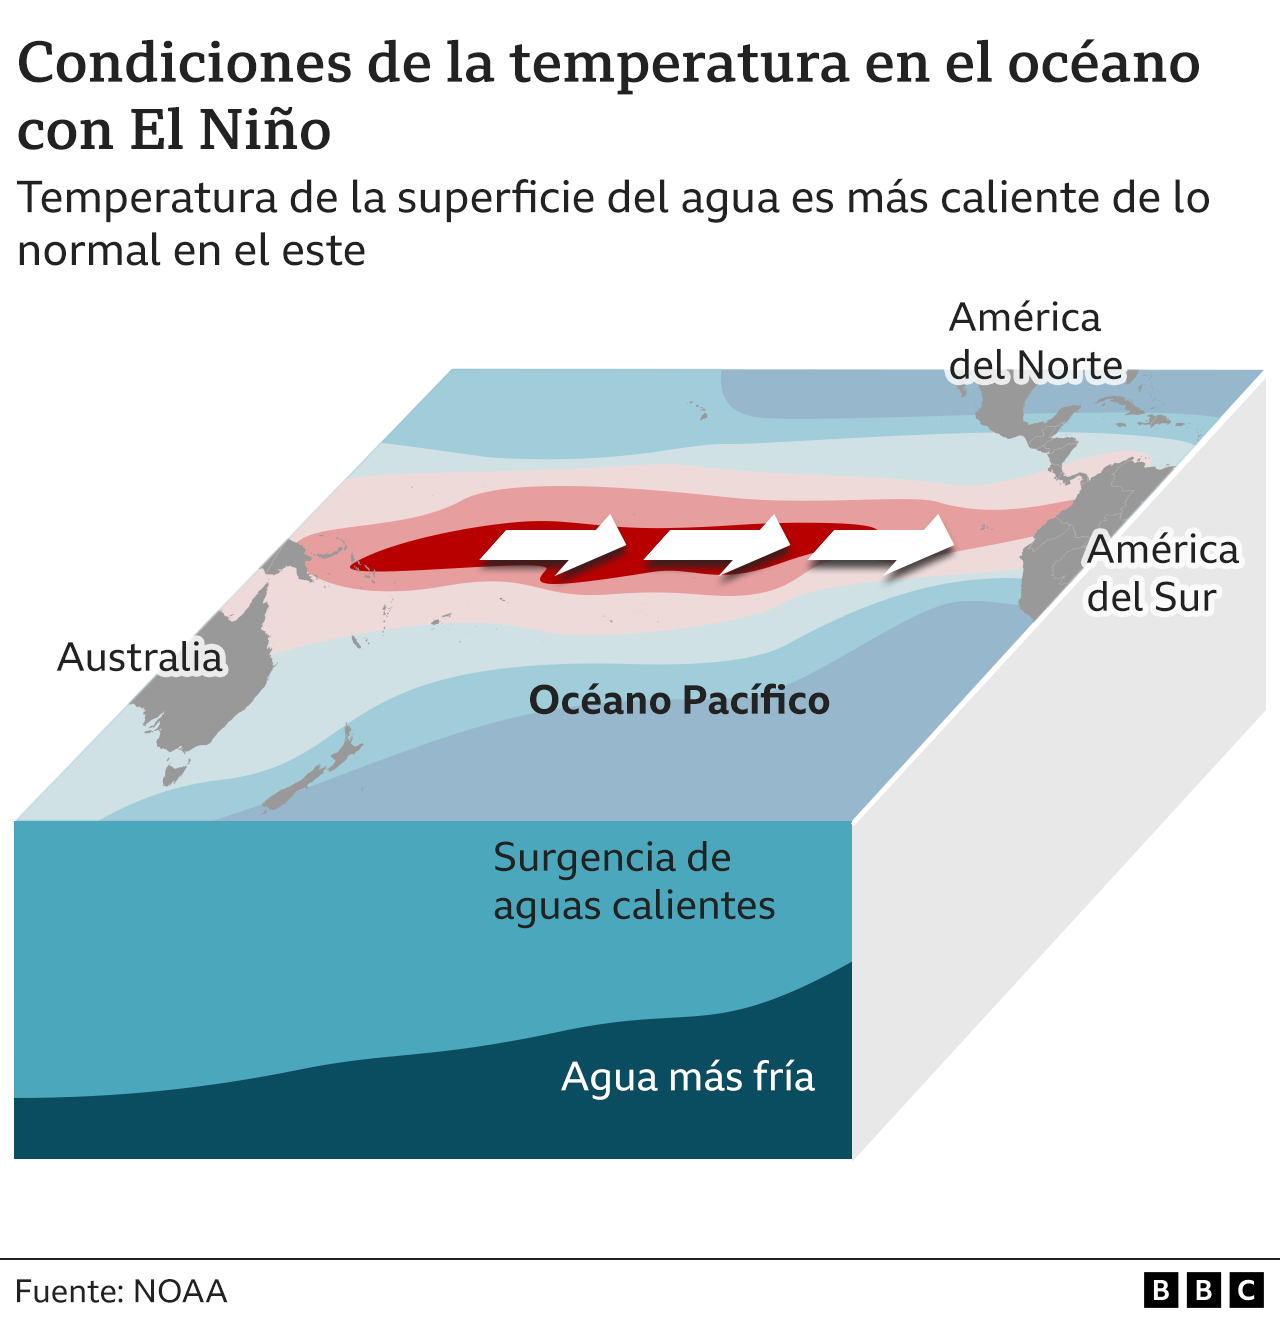 Wykres przedstawiający warunki temperatury oceanu podczas wystąpienia El Niño